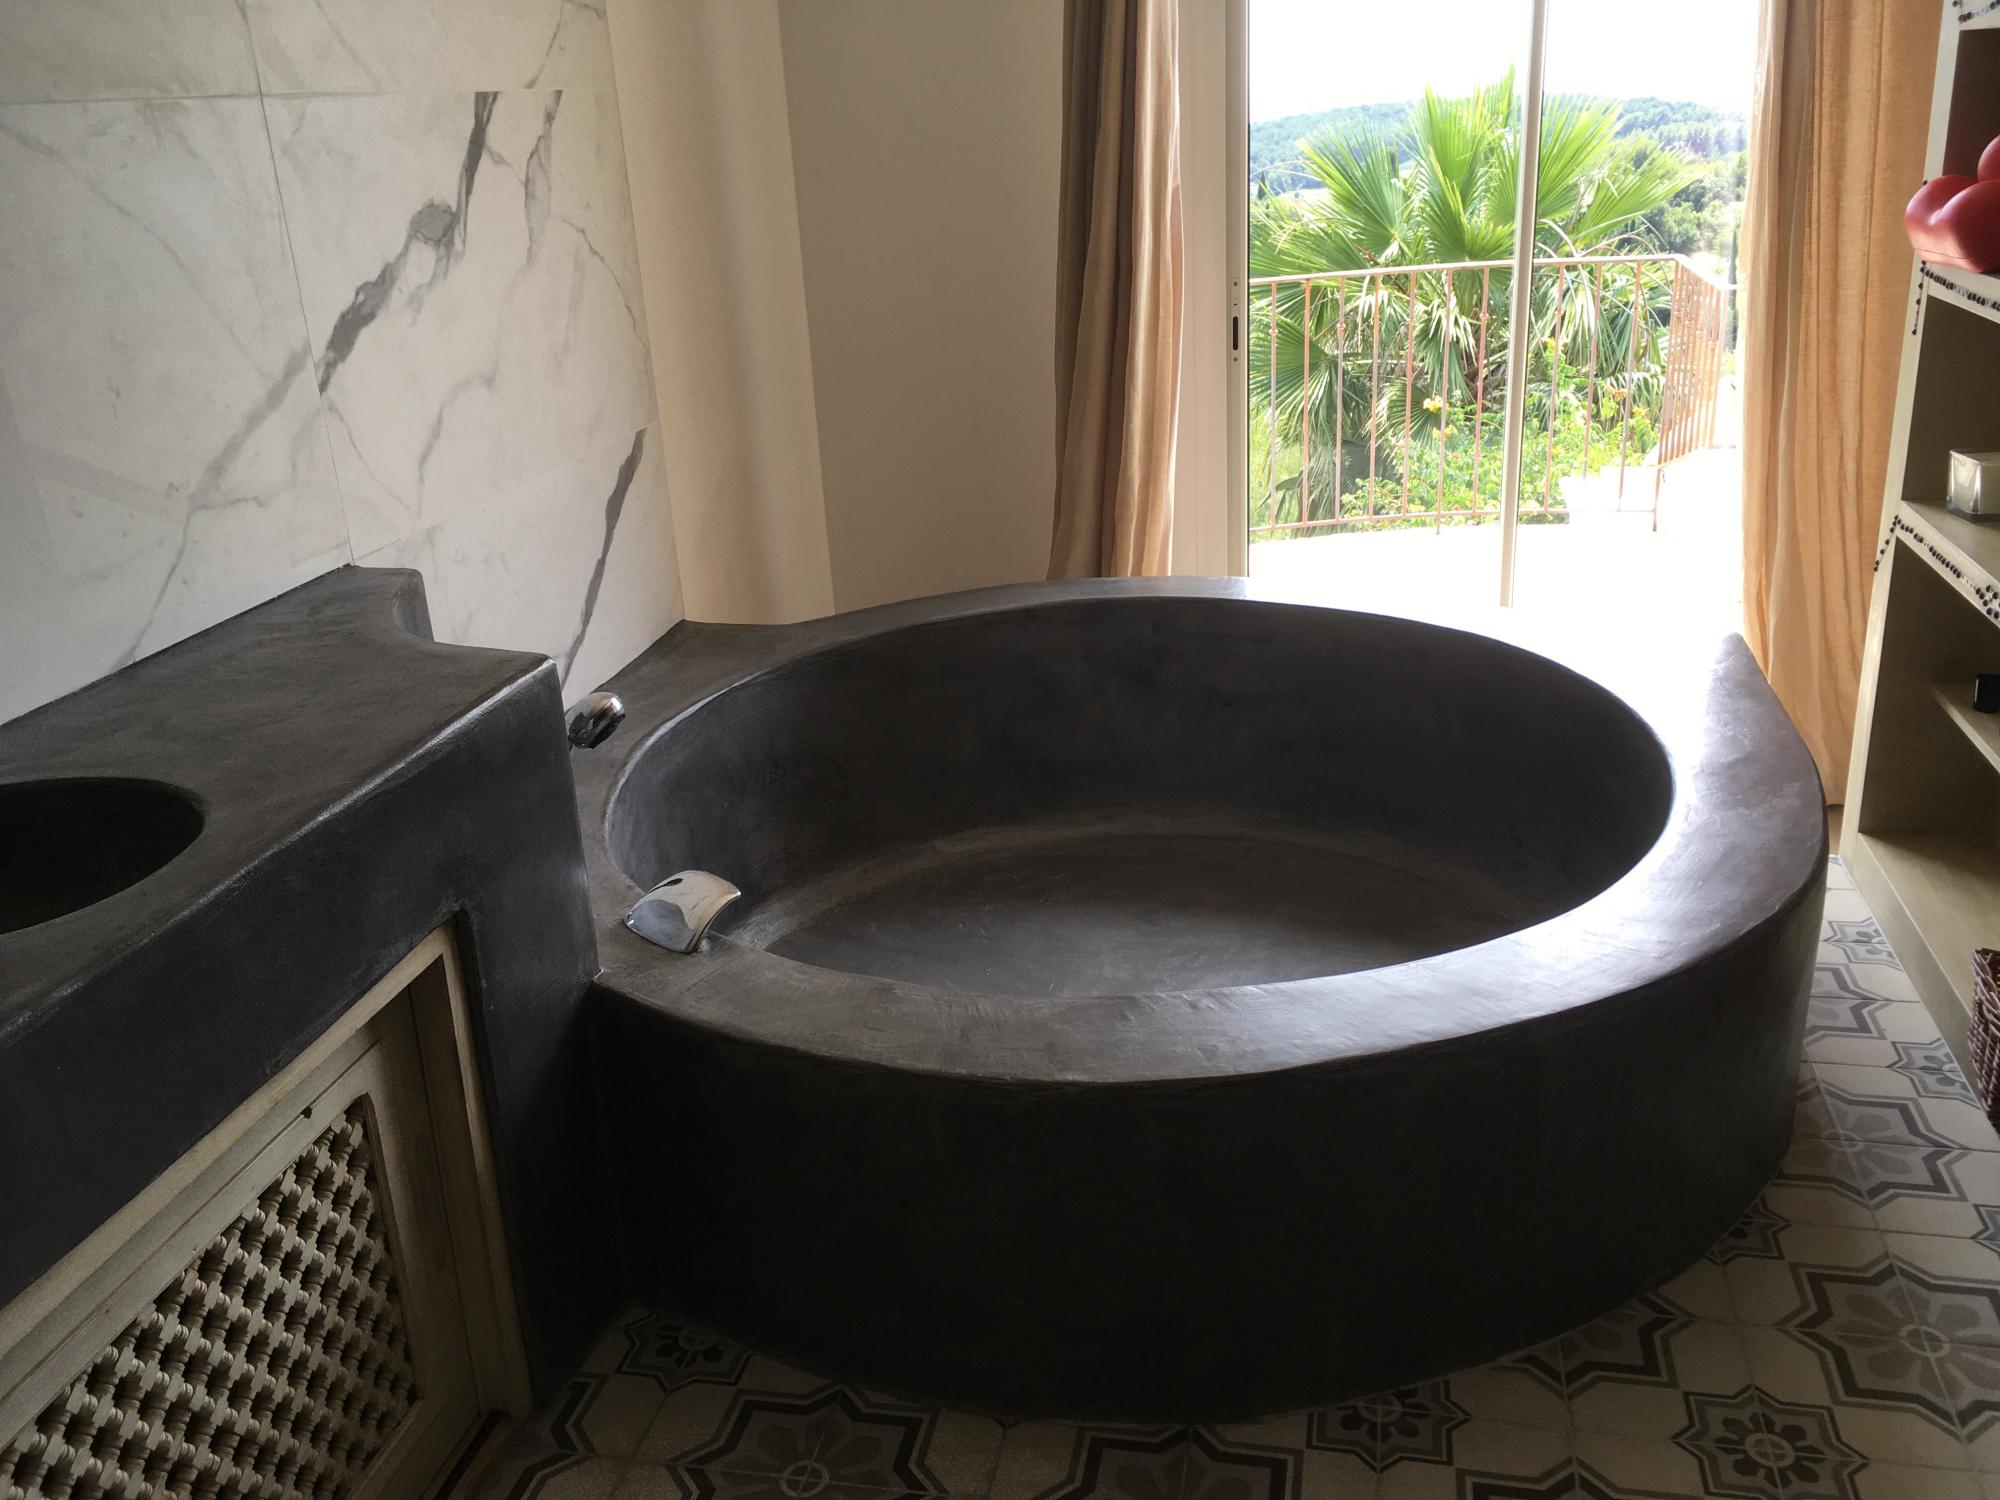 baignoire salle de bain beton cire